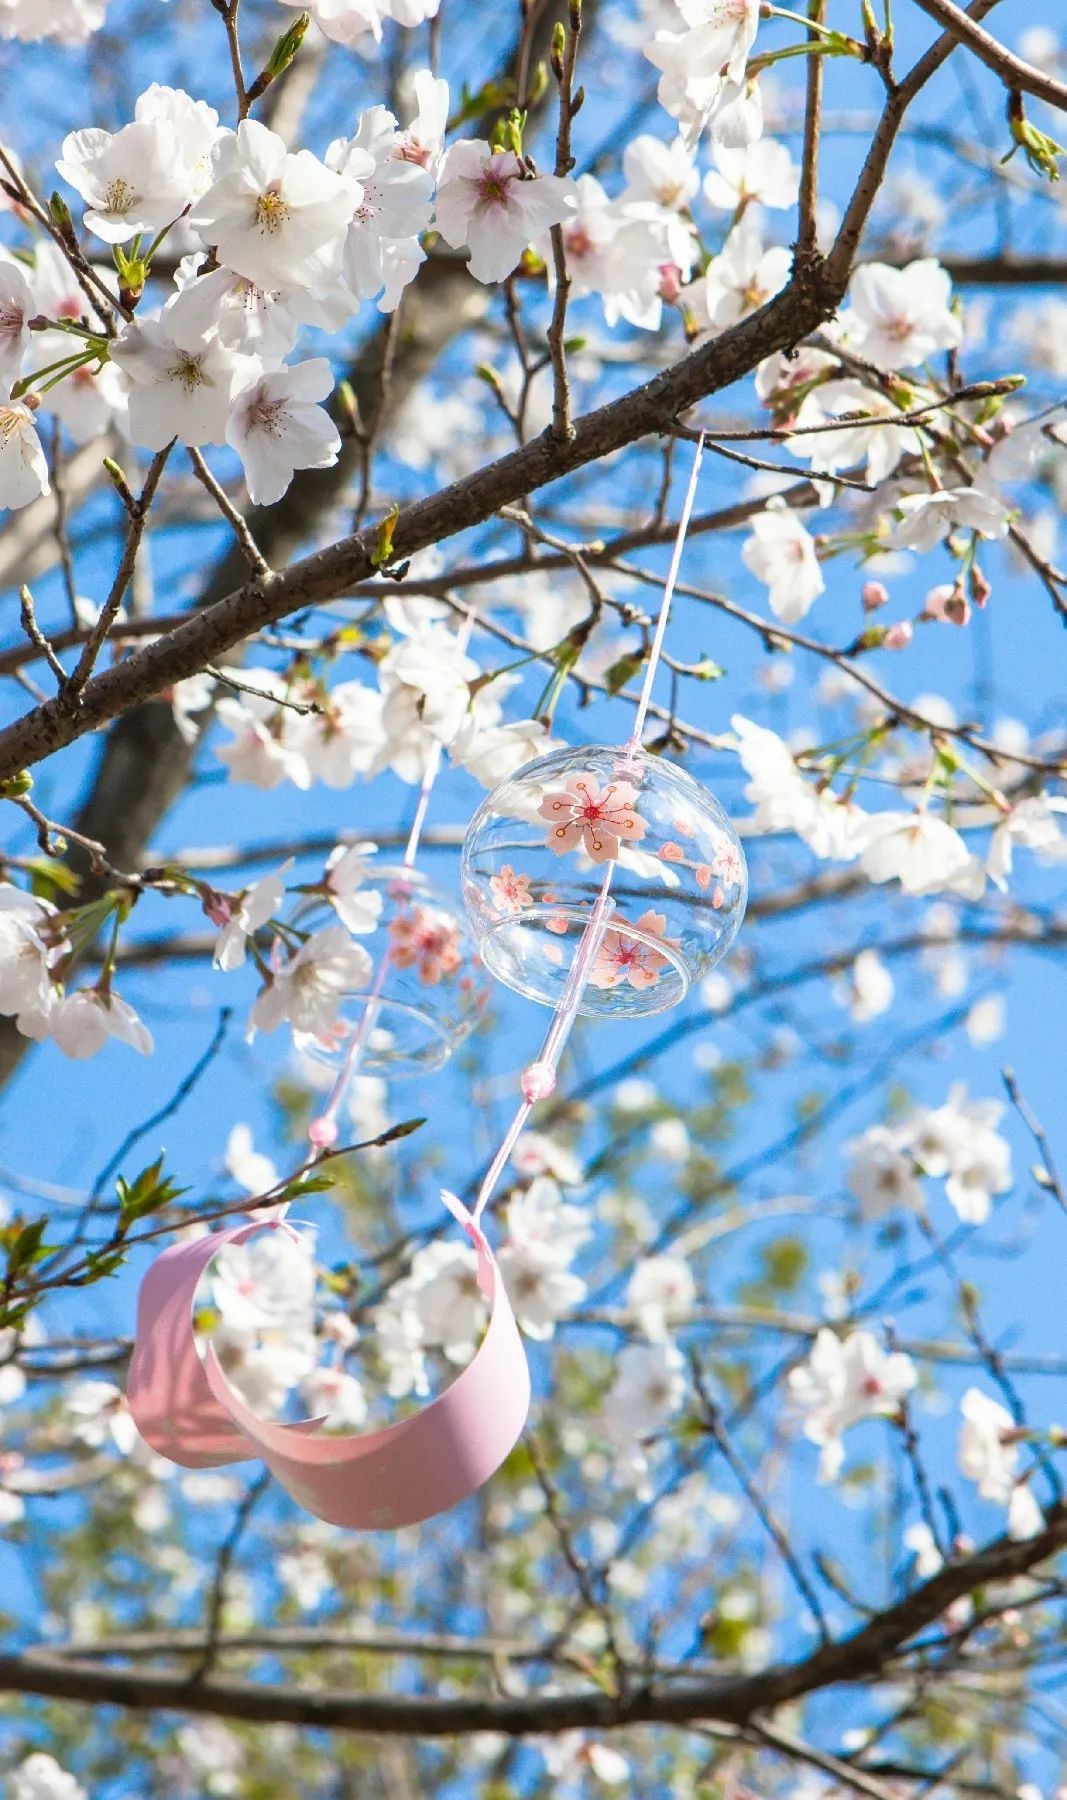 【春花⑩】溪水潺潺访早樱,金华最美樱花就在这!